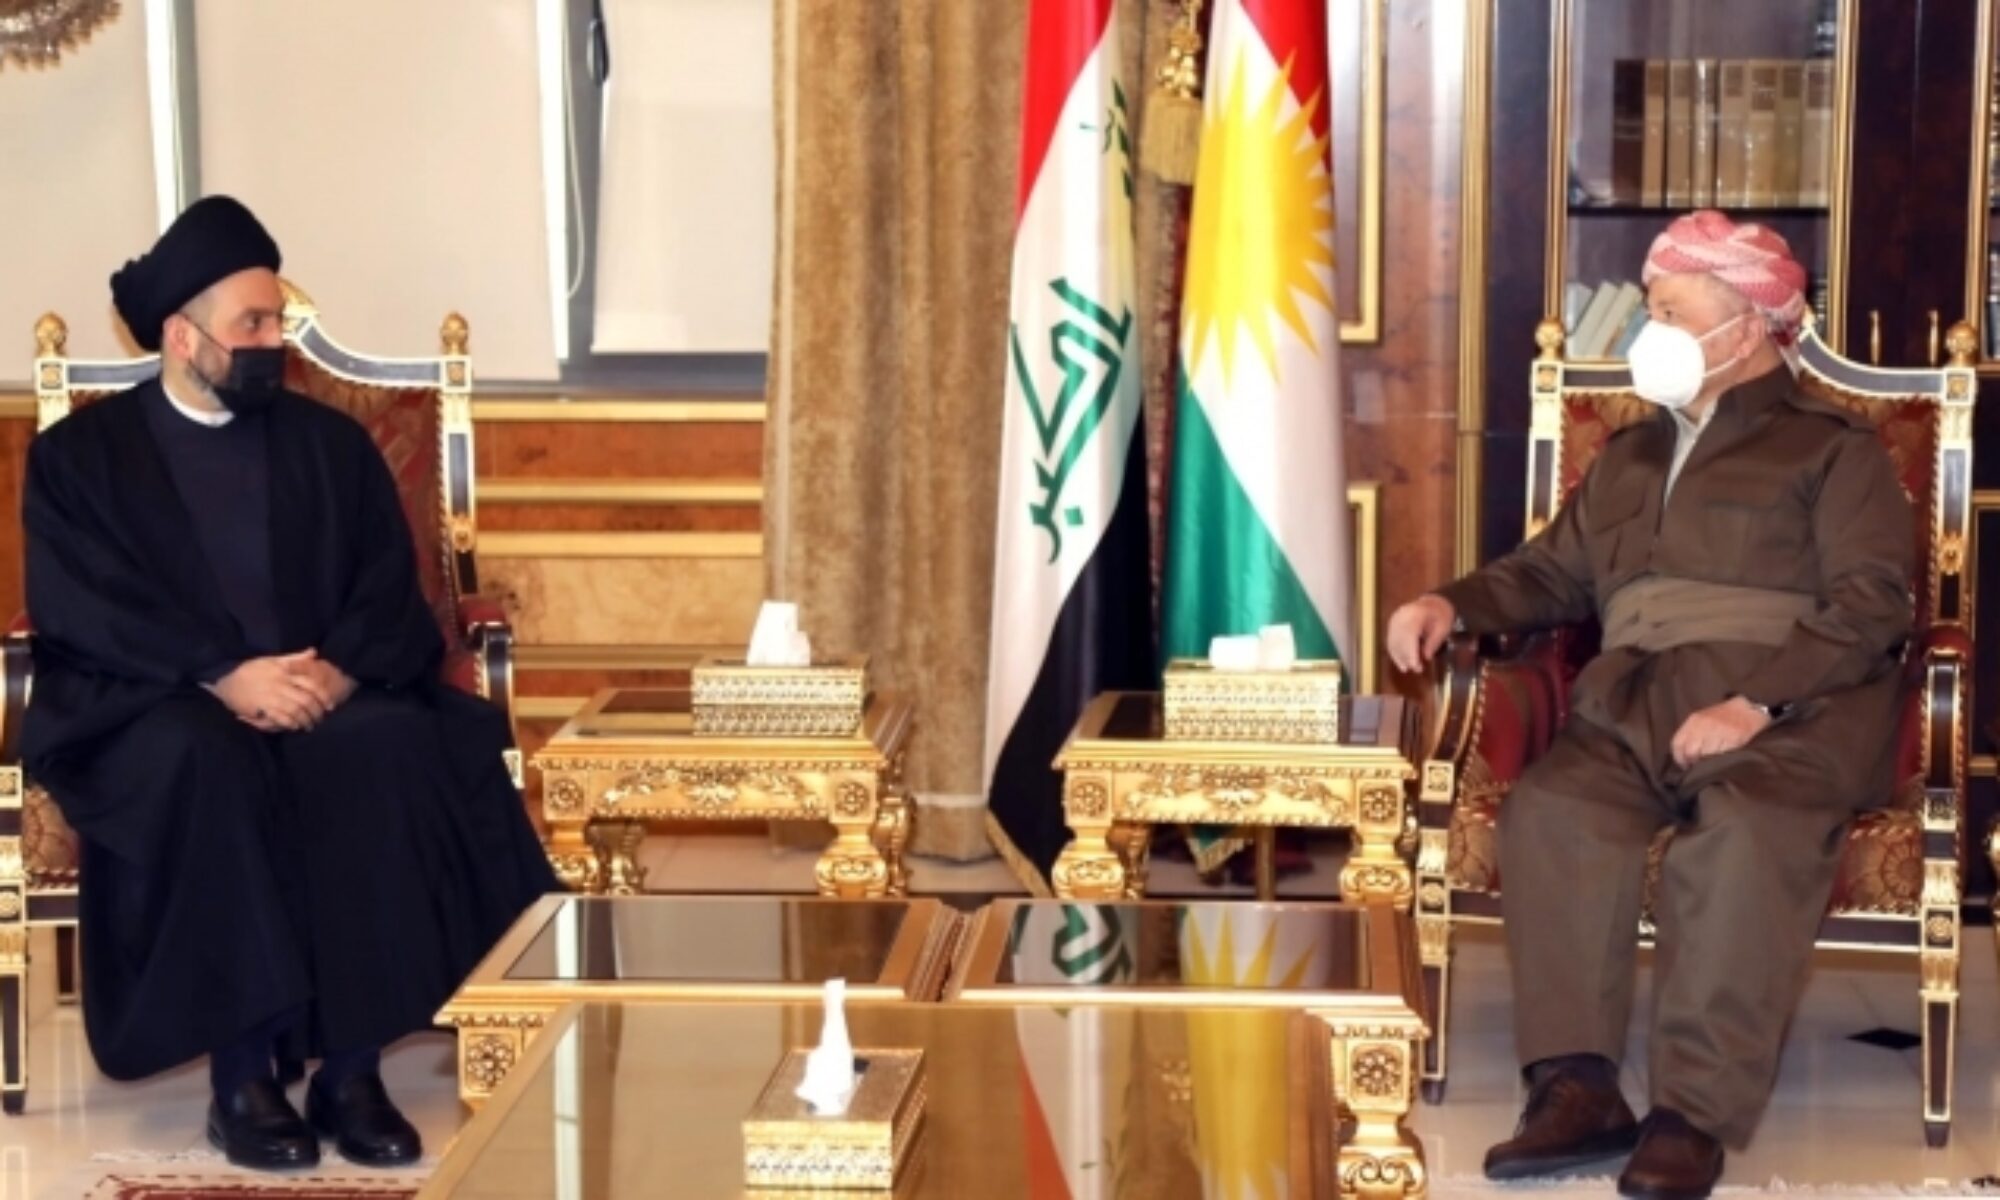 Şii lider Amar Hekim Irak'ın geleceğini konuşmak için Hewler'de Kürt liderlerle görüştü